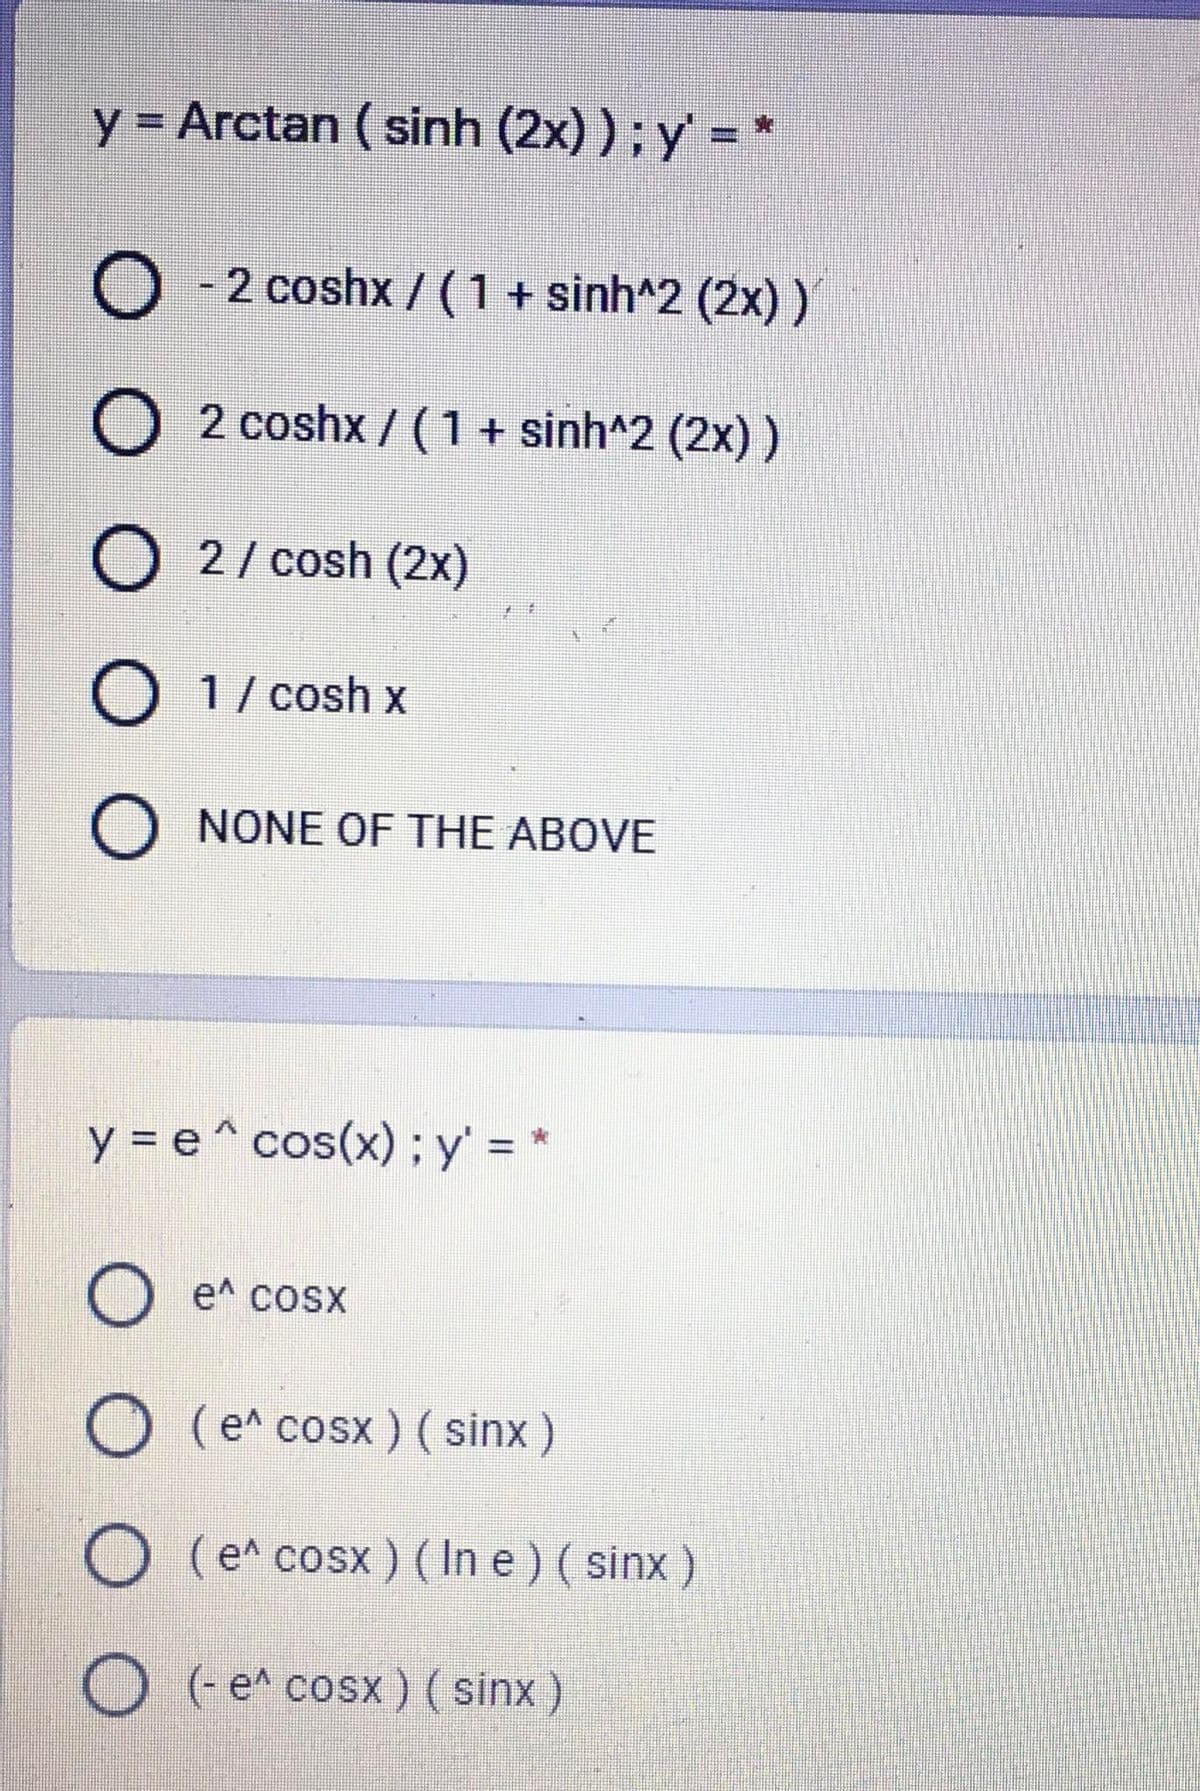 y = Arctan ( sinh (2x) ); y' = *
%3D
O - 2 coshx / (1 + sinh^2 (2x))
2 coshx / (1+ sinh^2 (2x) )
O 2/ cosh (2x)
O 1/ cosh x
O NONE OF THE ABOVE
y = e^ cos(x) ; y' = *
O e^ cosx
O (e^ cosx ) (sinx)
O (e^ cosx ) ( In e ) ( sinx )
O (e^ cosx) ( sinx )
